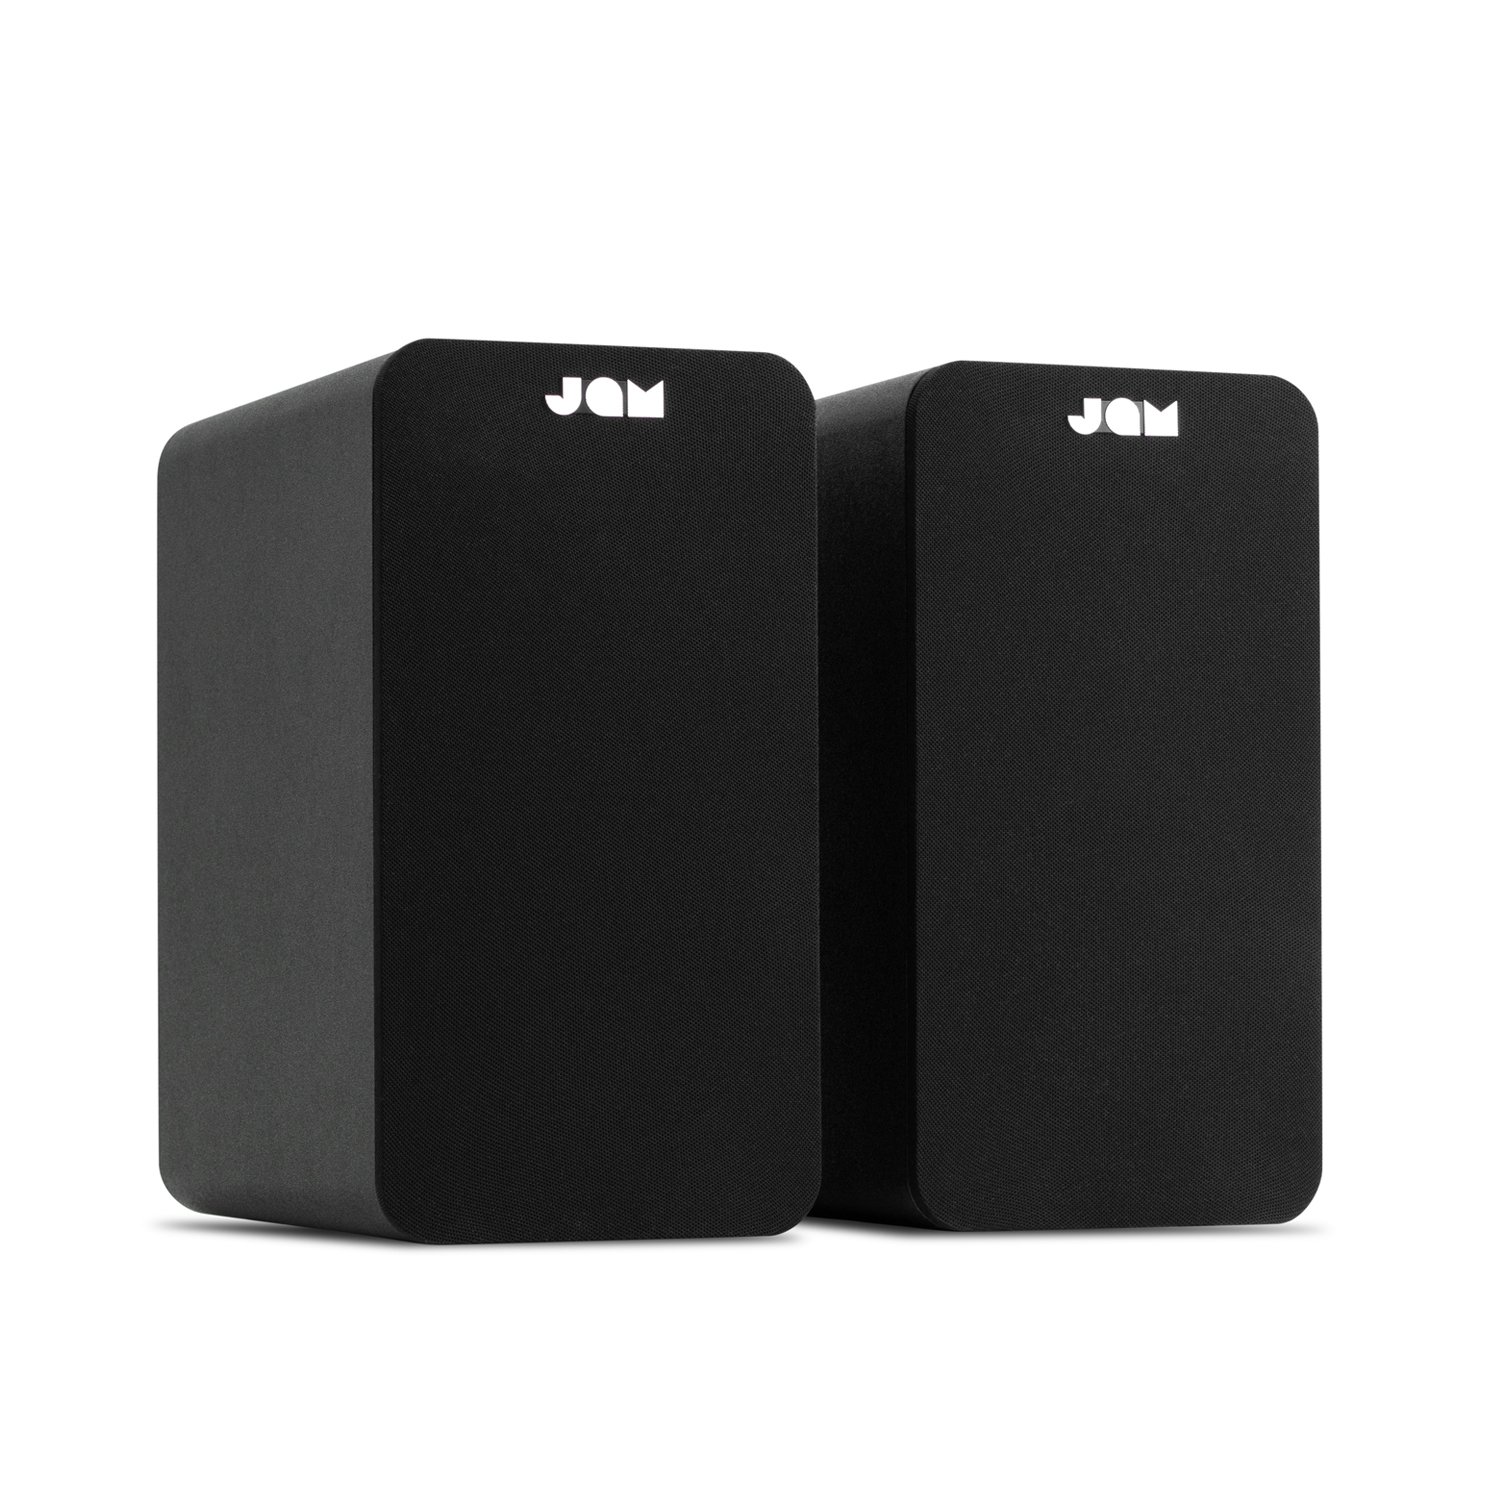 Jam Bookshelf Bluetooth Speakers - Black